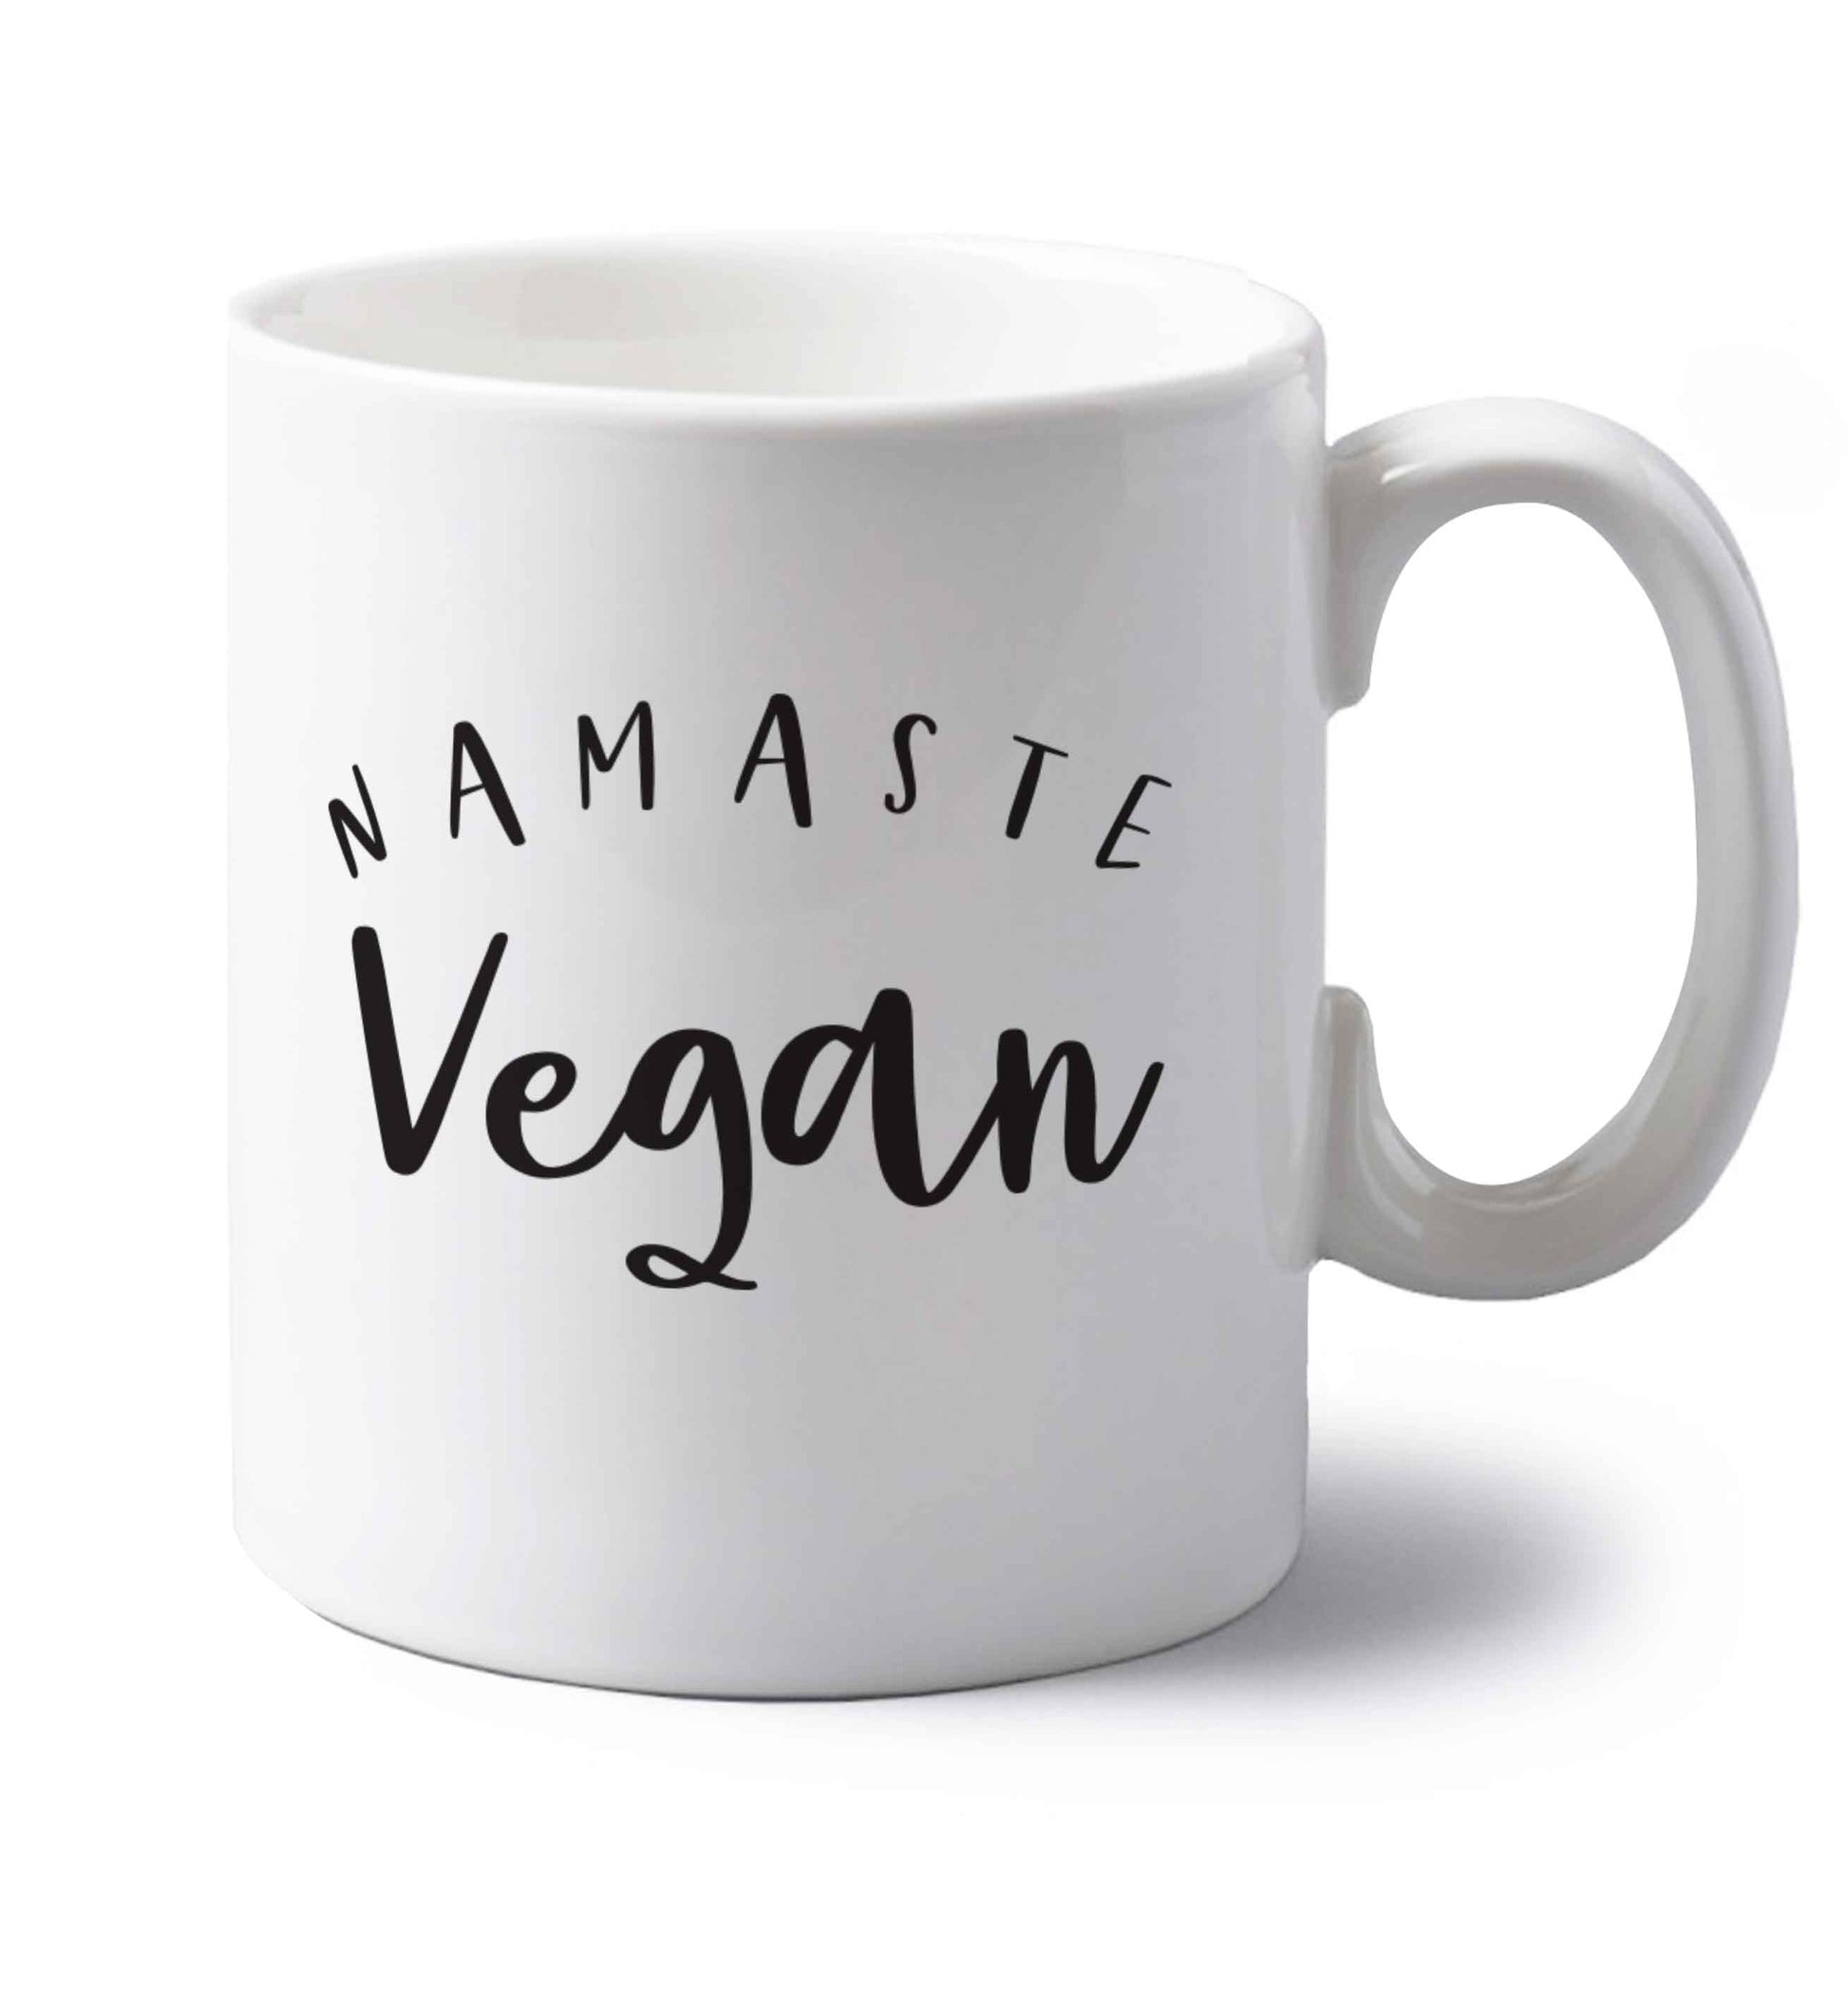 Namaste vegan left handed white ceramic mug 